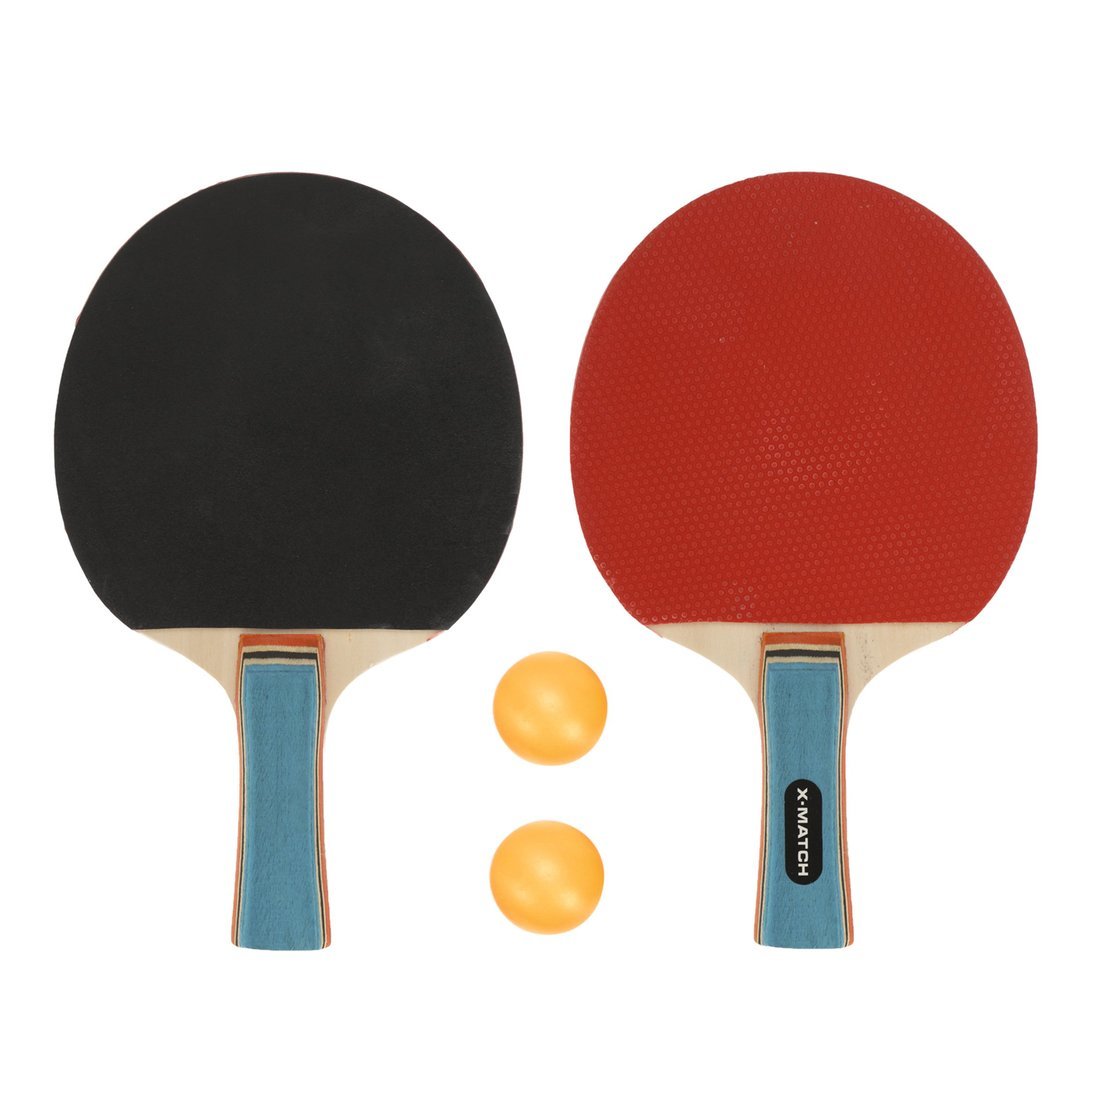 Набор для настольного тенниса X-Match (2 ракетки 8 мм., 2 шарика) 636271 ракетка для настольного тенниса start line level 500 коническая 12604